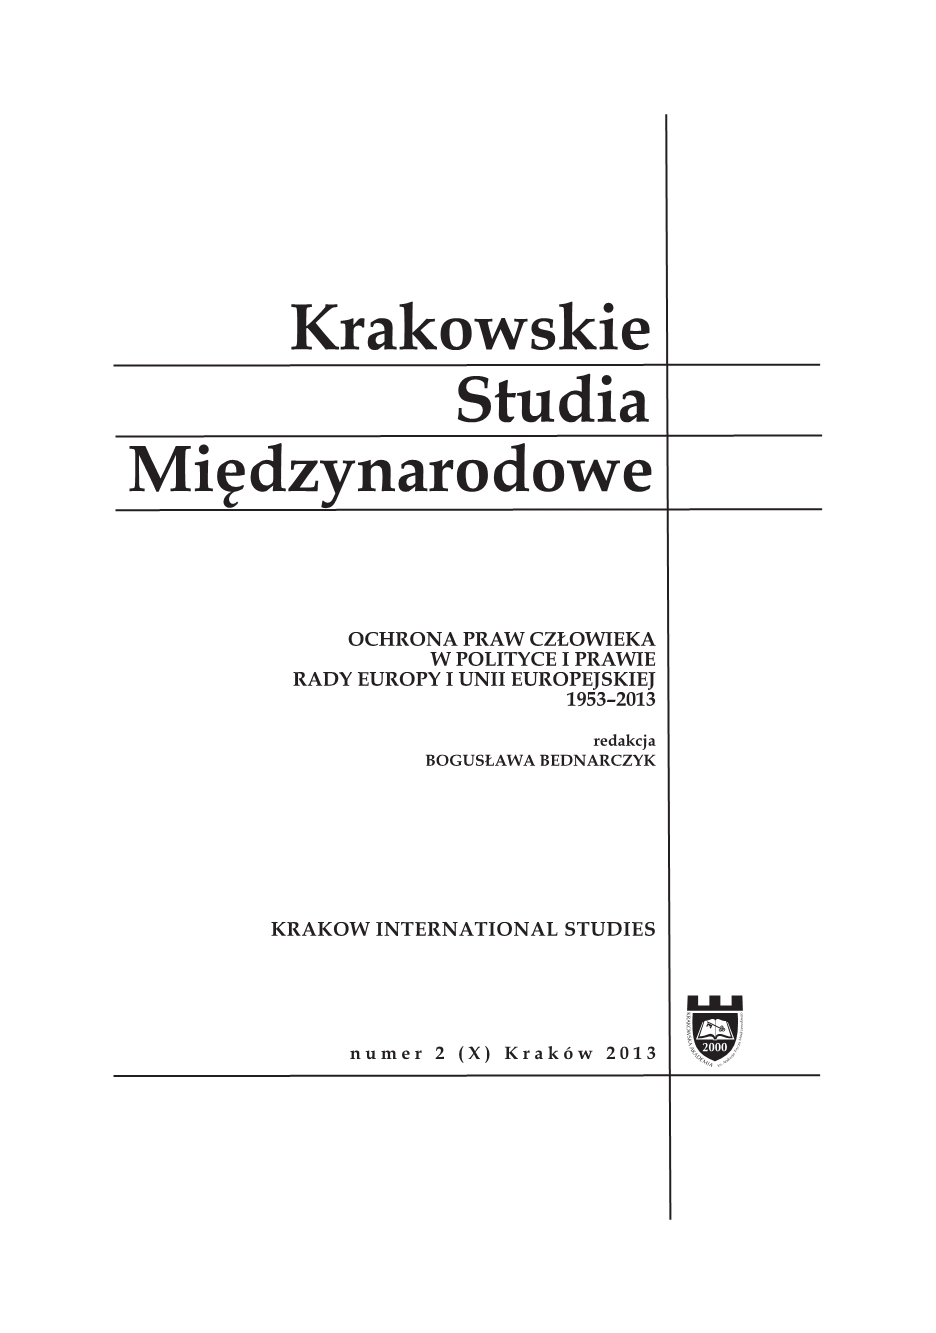 The first lady of journalism at the Andrzej Frycz Modrzewski Krakow University Cover Image